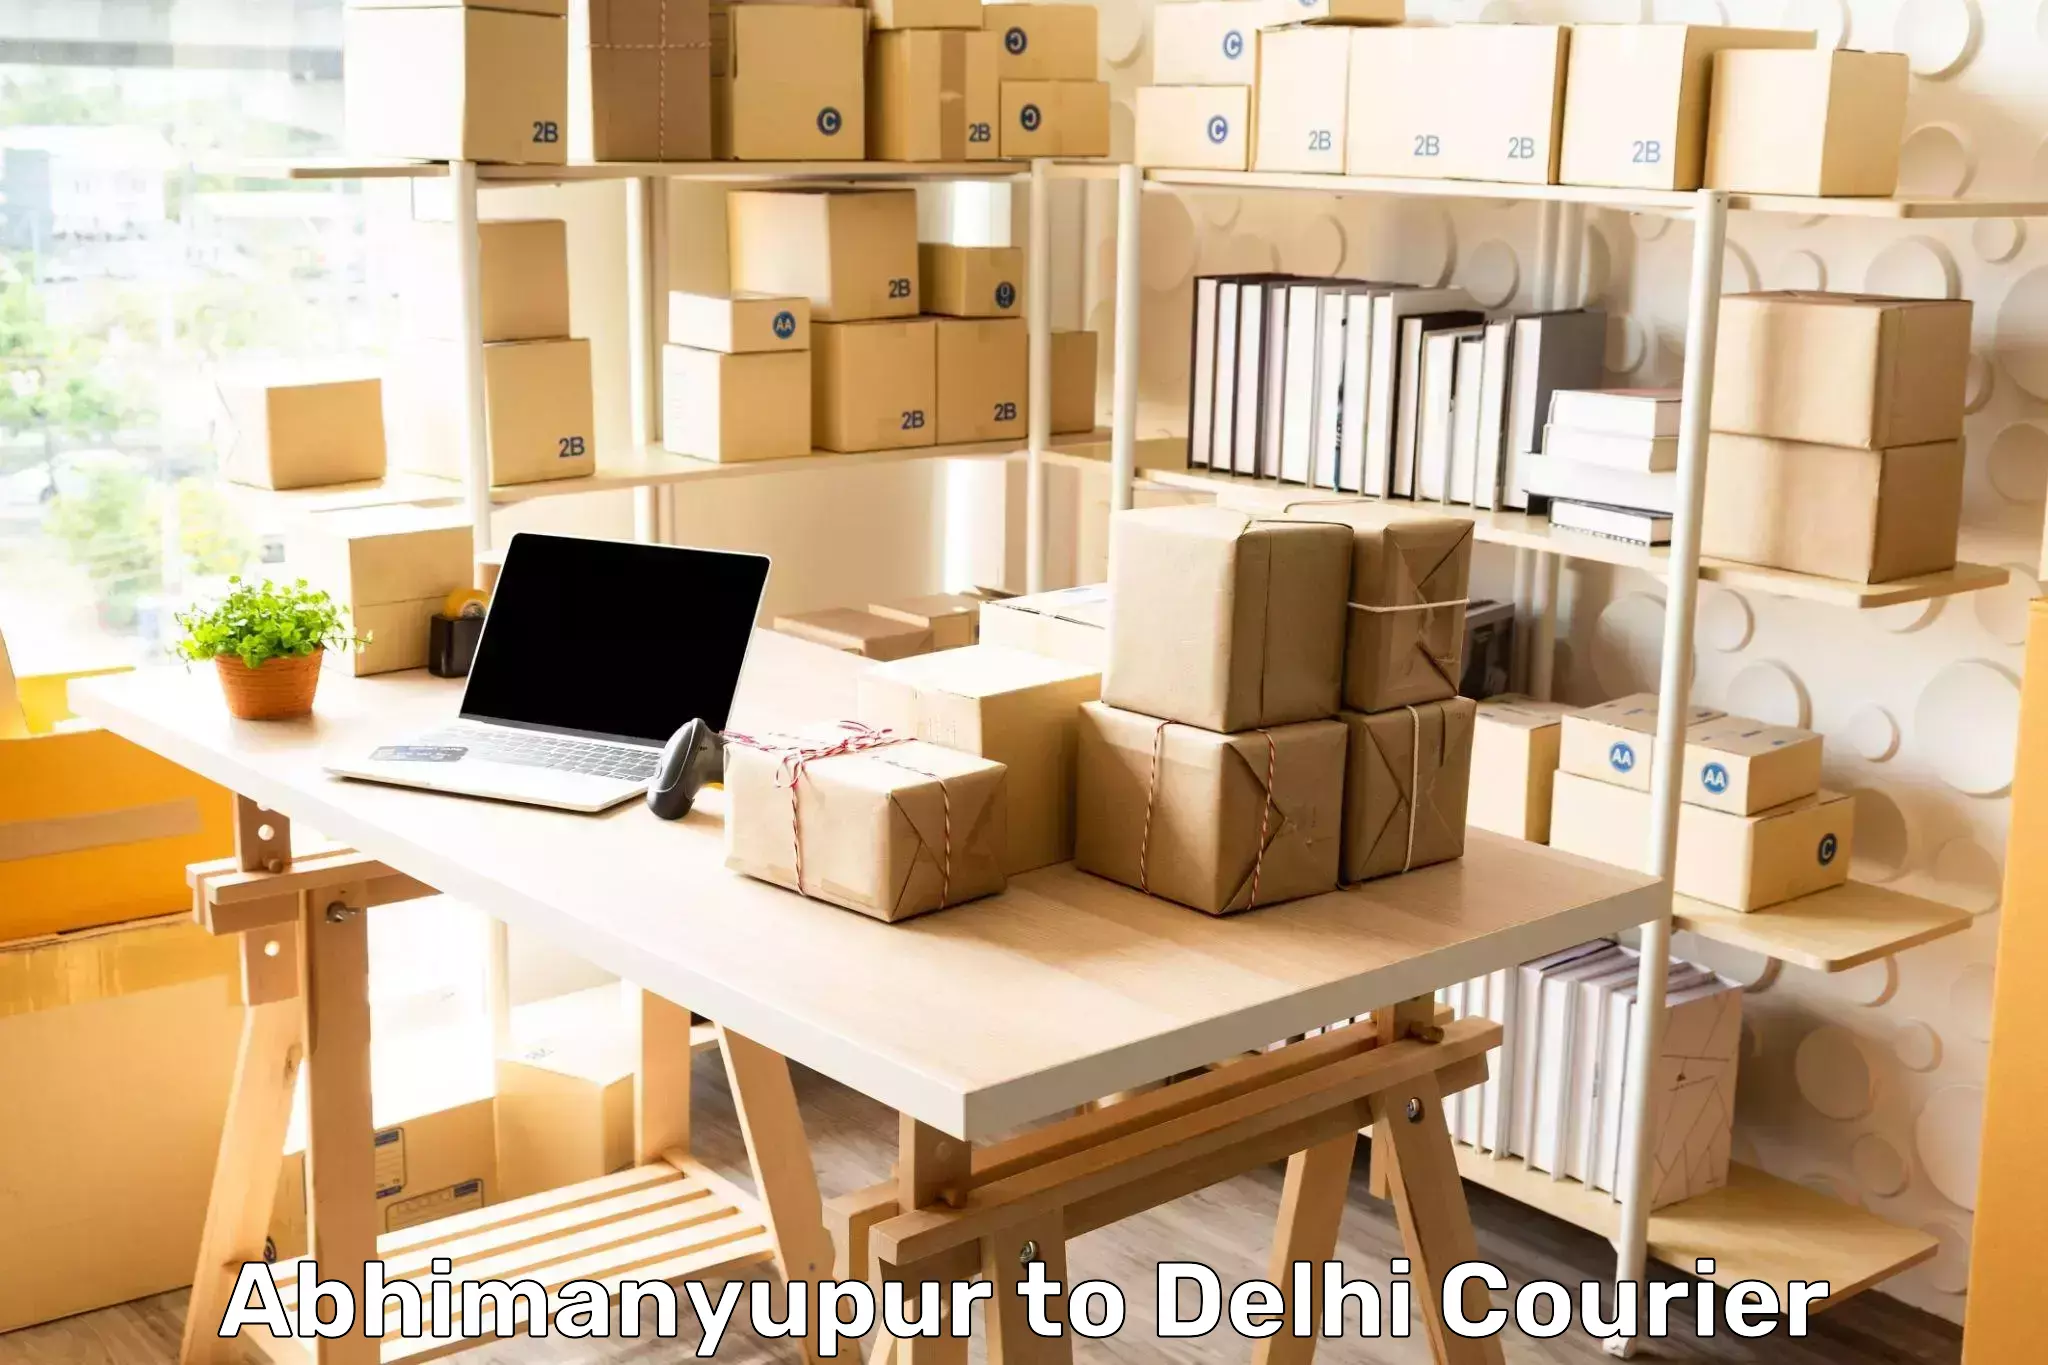 Digital courier platforms Abhimanyupur to IIT Delhi